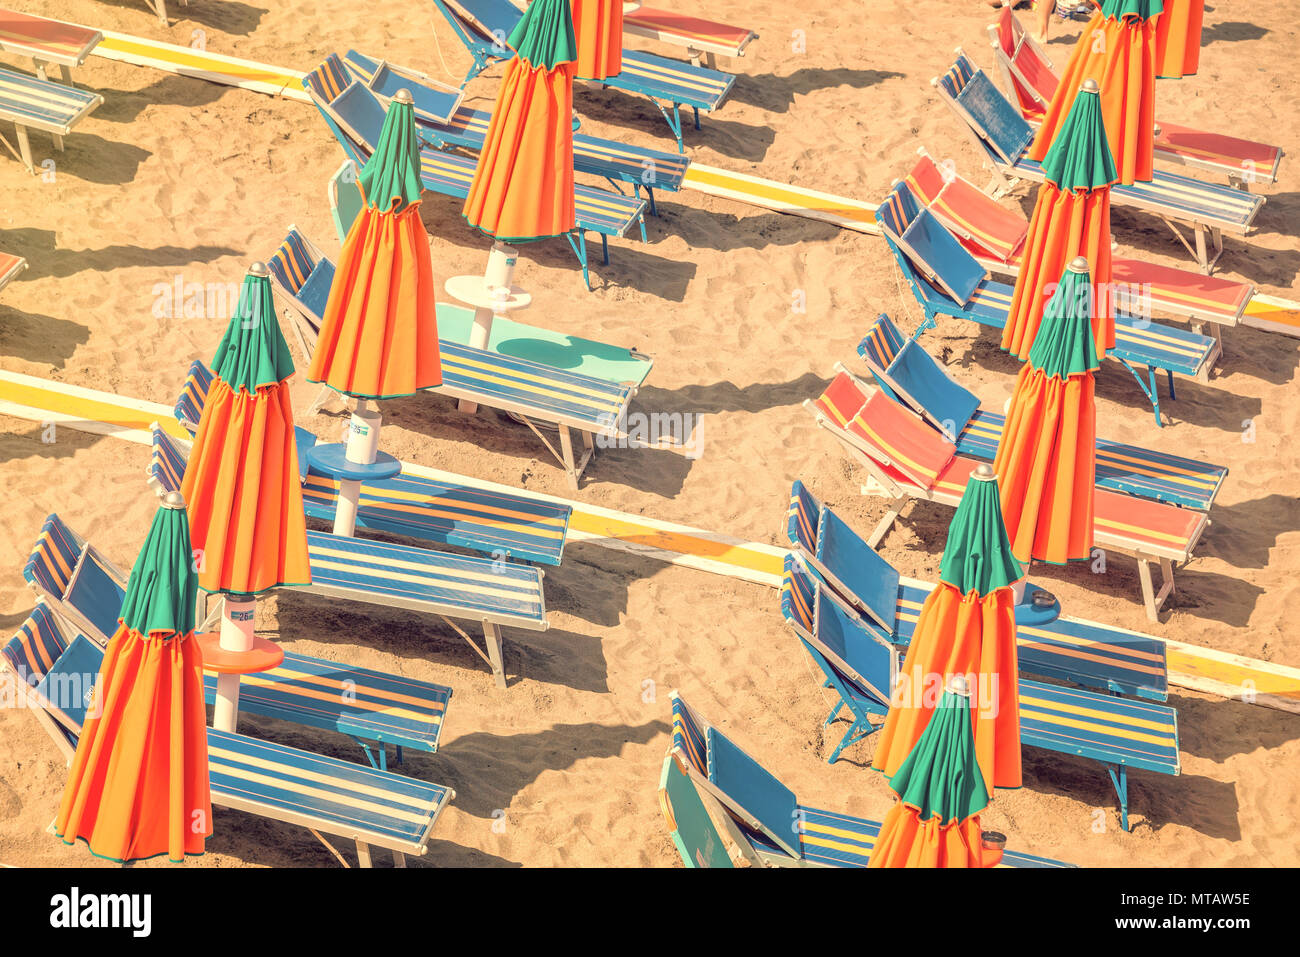 Des chaises longues et des parasols colorés sur une plage vue d'en haut, processus vintage Banque D'Images